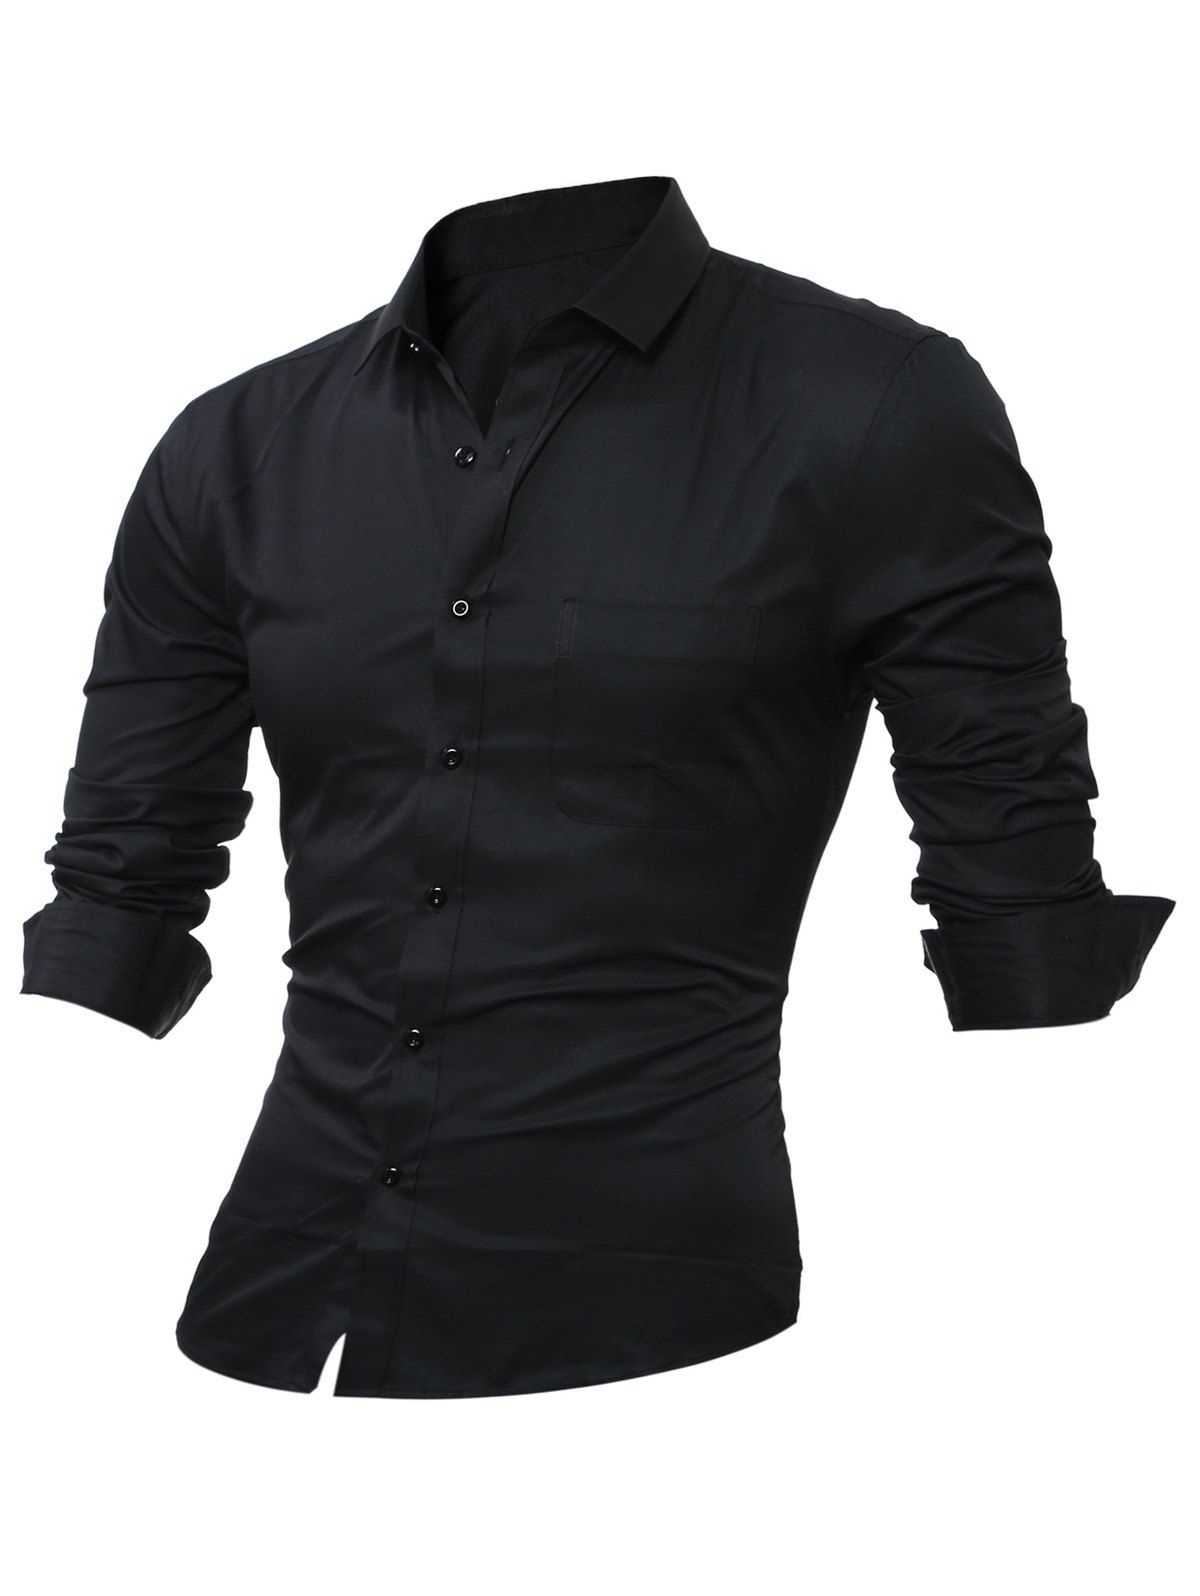 [17% OFF] 2020 Chest Pocket Long Sleeve Plain Shirt In BLACK | DressLily